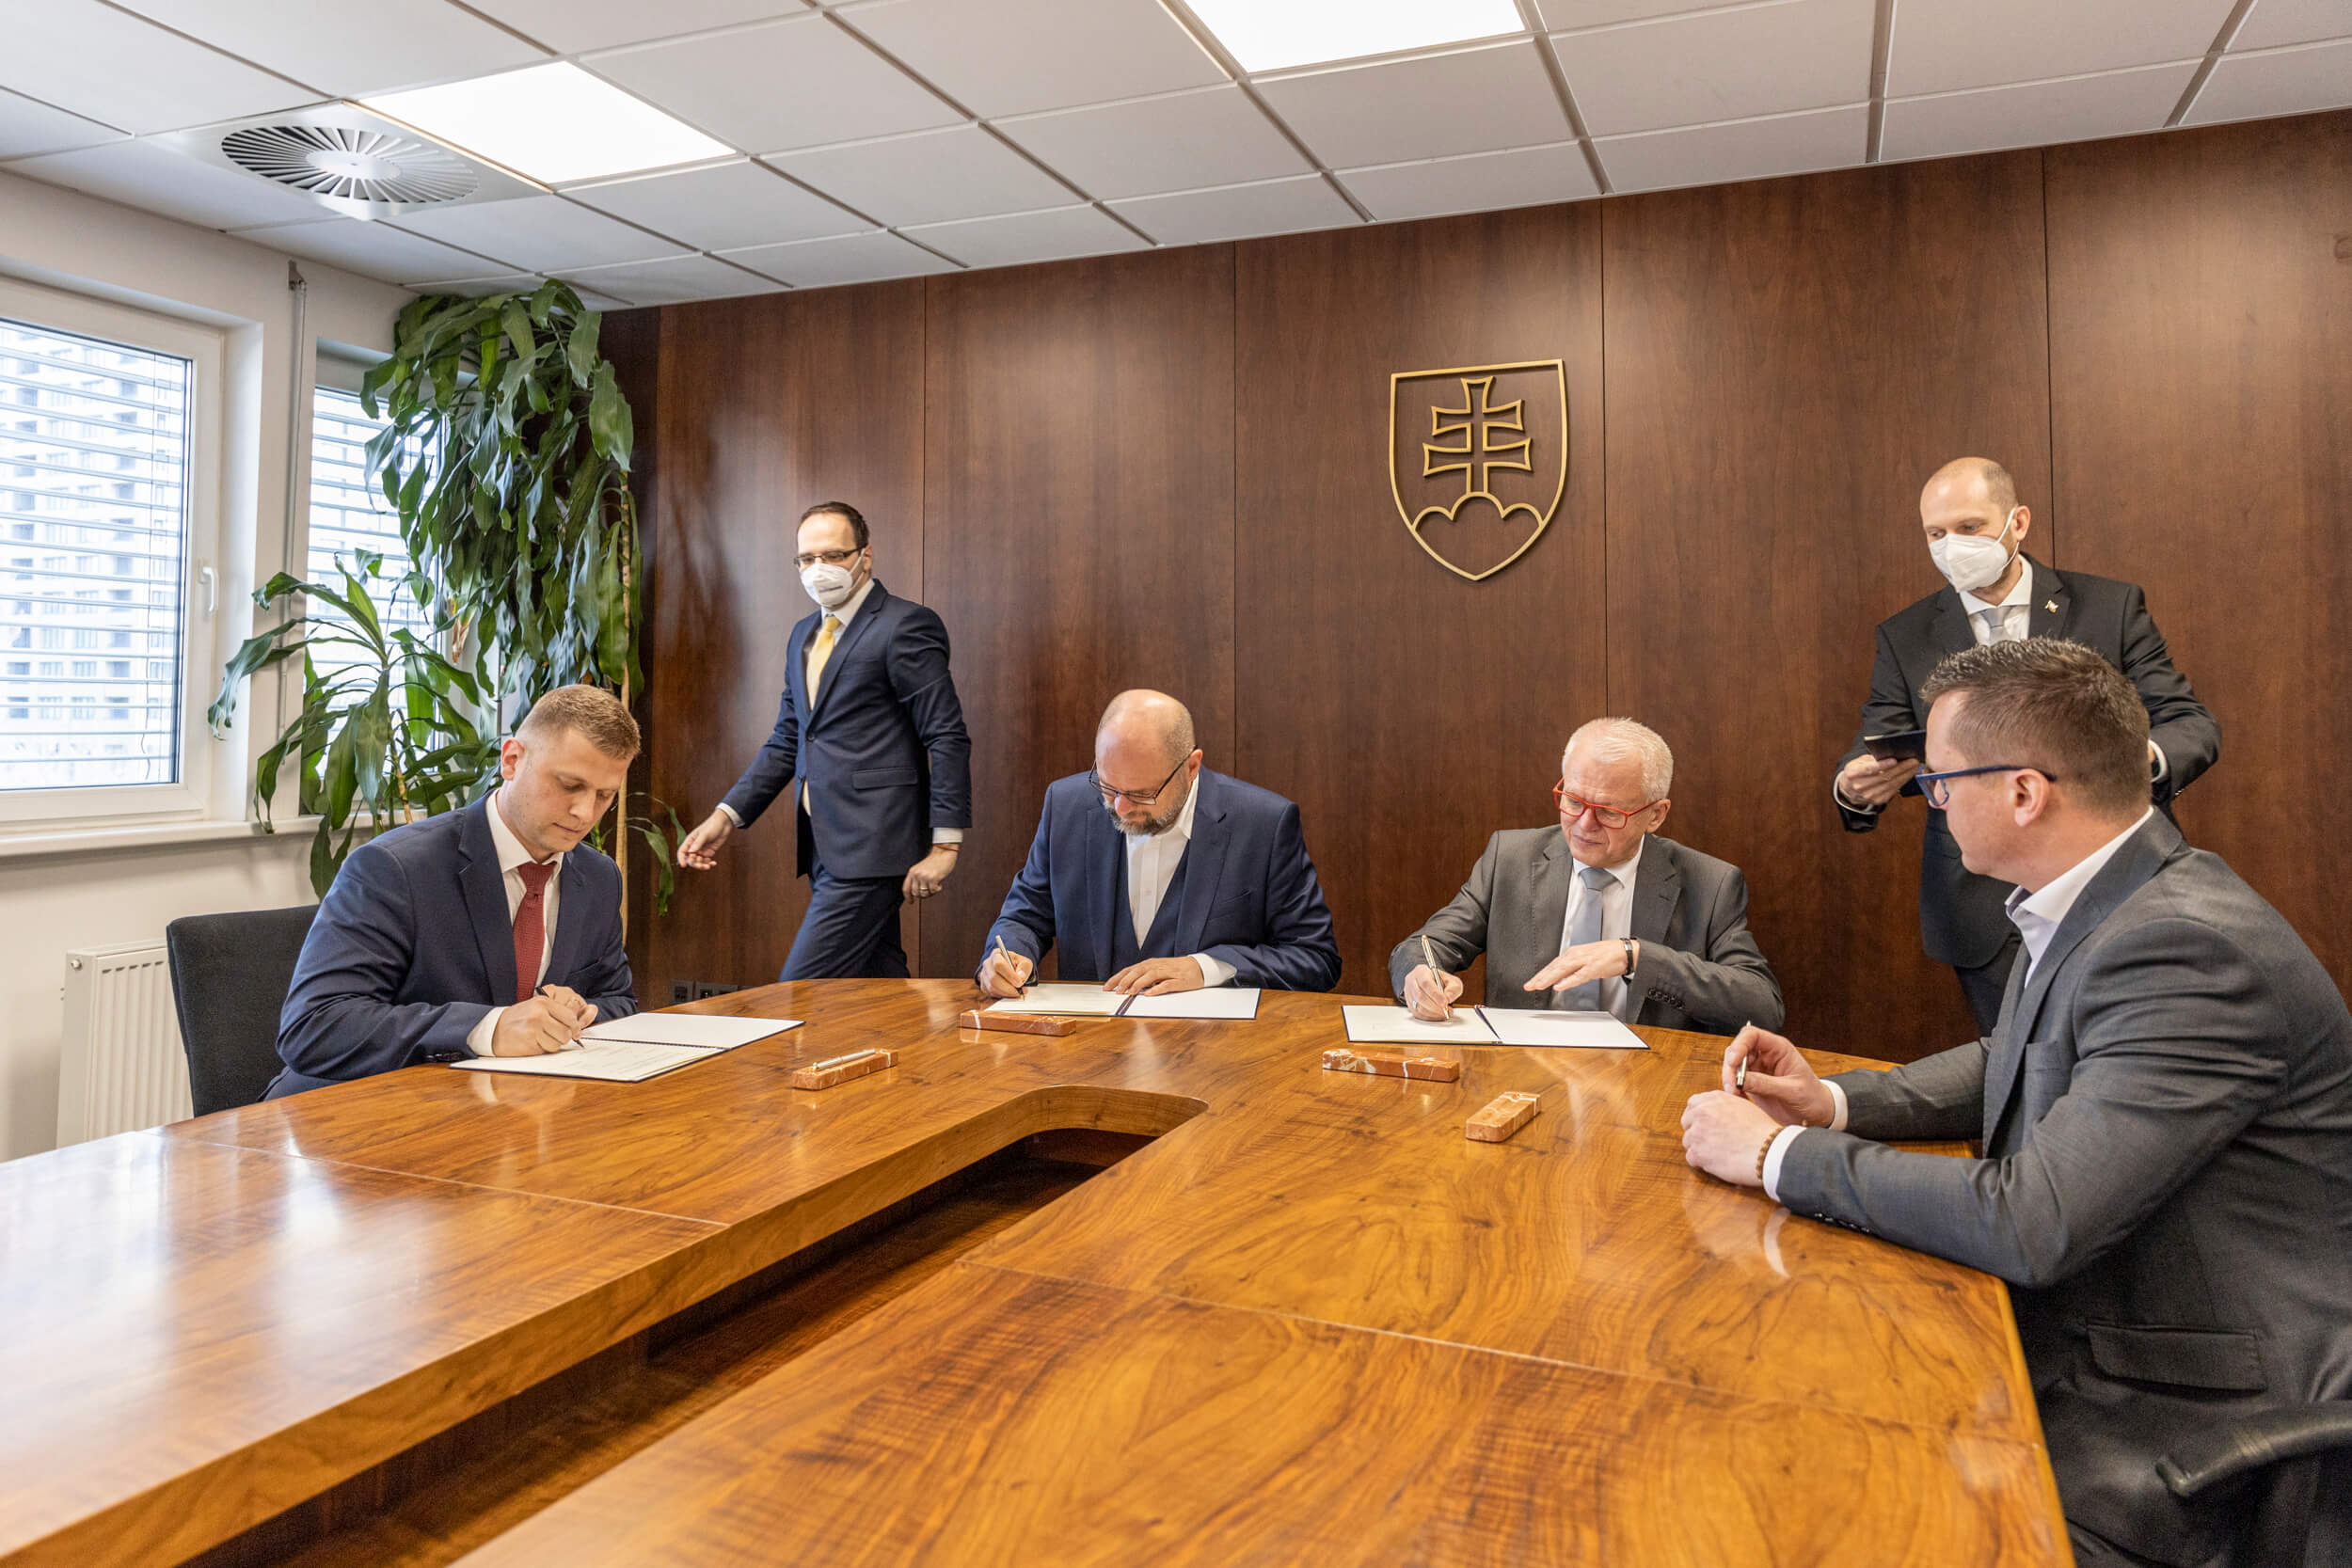 Podpis memoranda o spolupráci medzi Ekonomickou univerzitou v Bratislave a Ministerstvom hospodárstva SR prinesie zintenzívnenie spolupráce